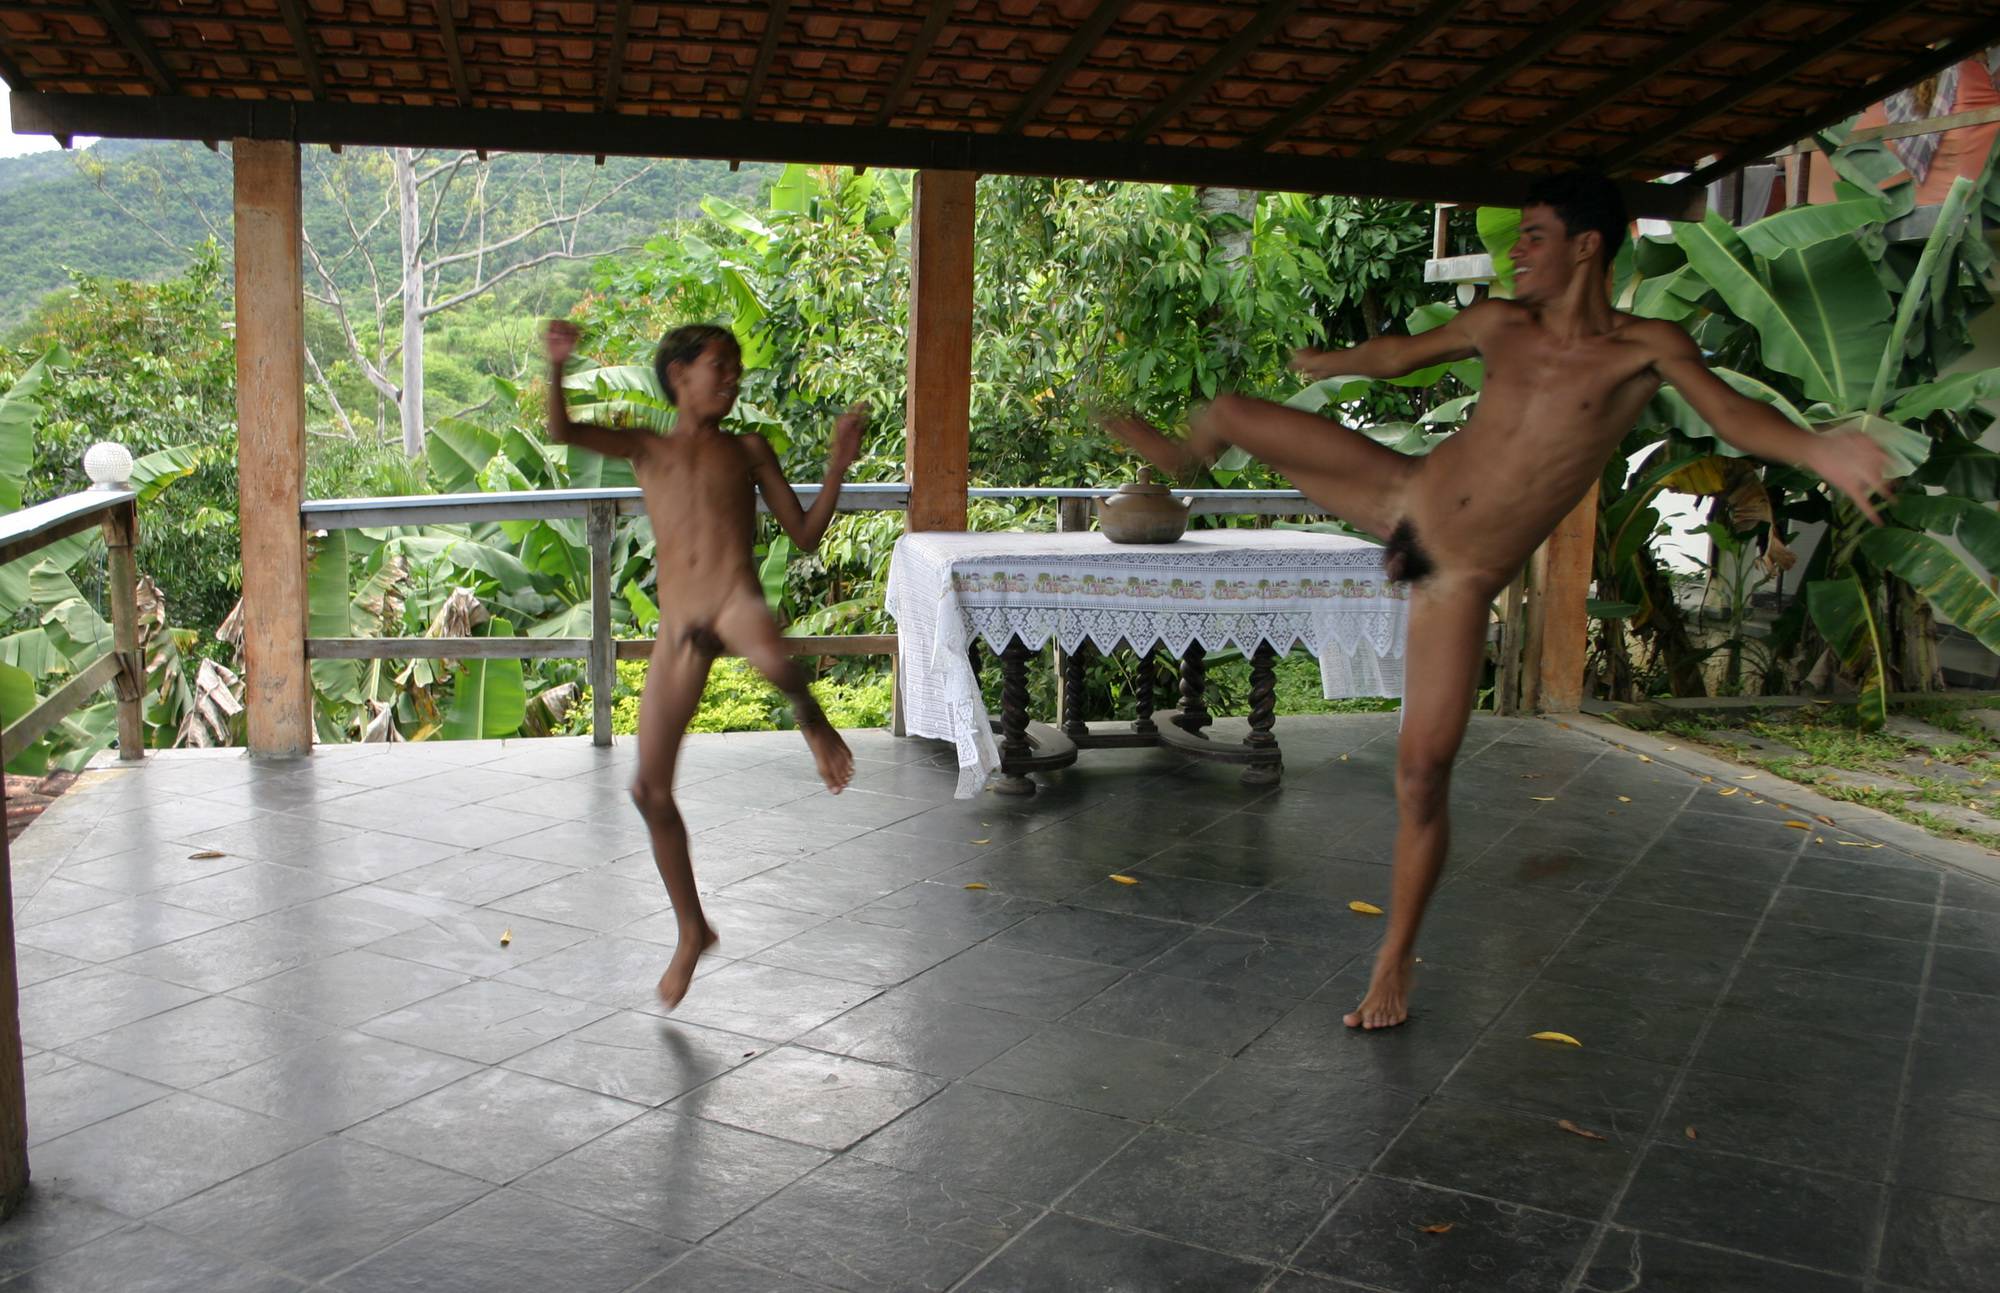 Purenudism Pics Brazilian Men Are Dancing - 2